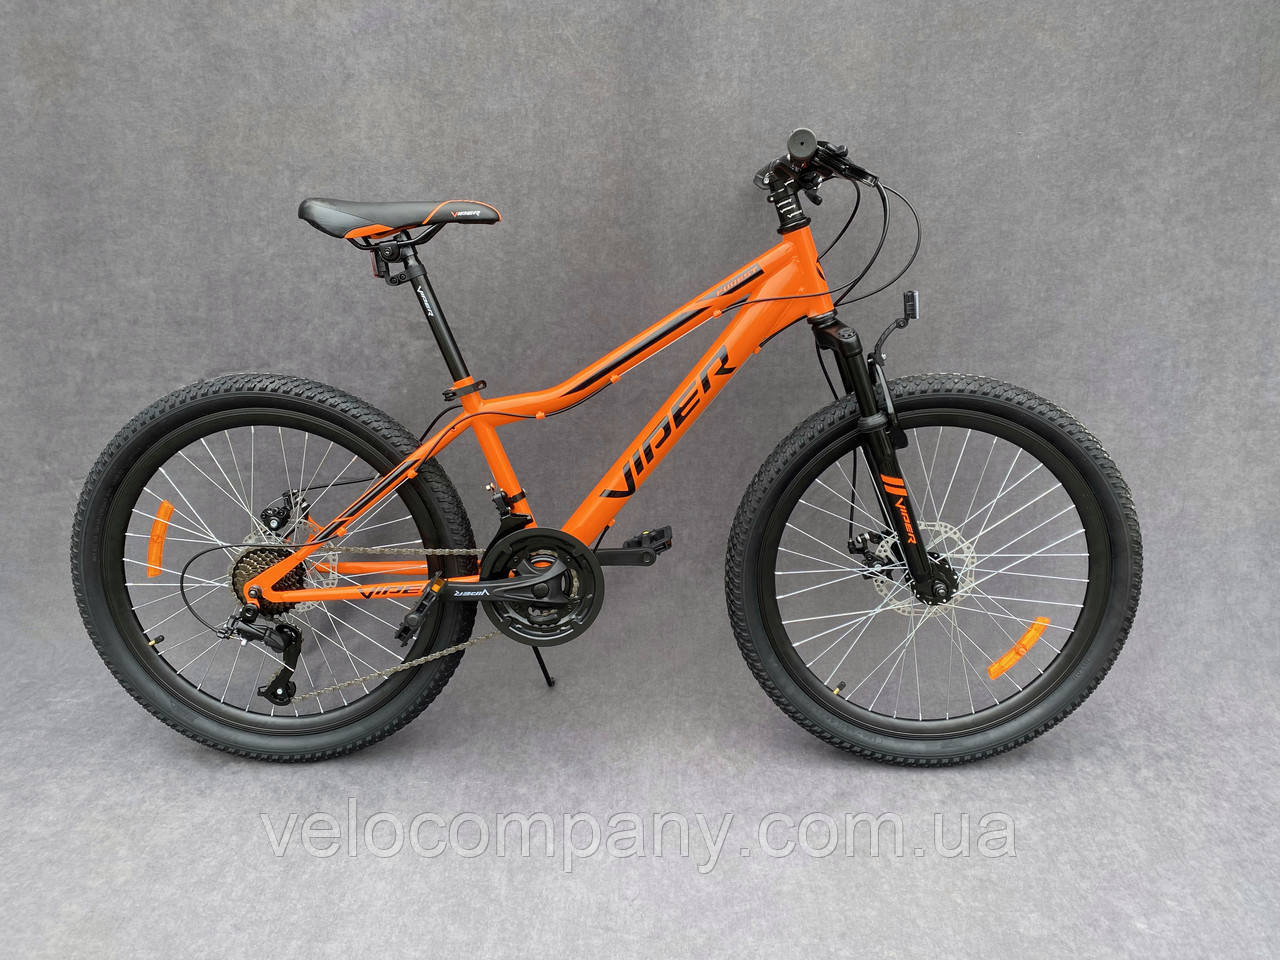 Підлітковий гірський велосипед Viper Forest 24 D рама 12.5 помаранчевий